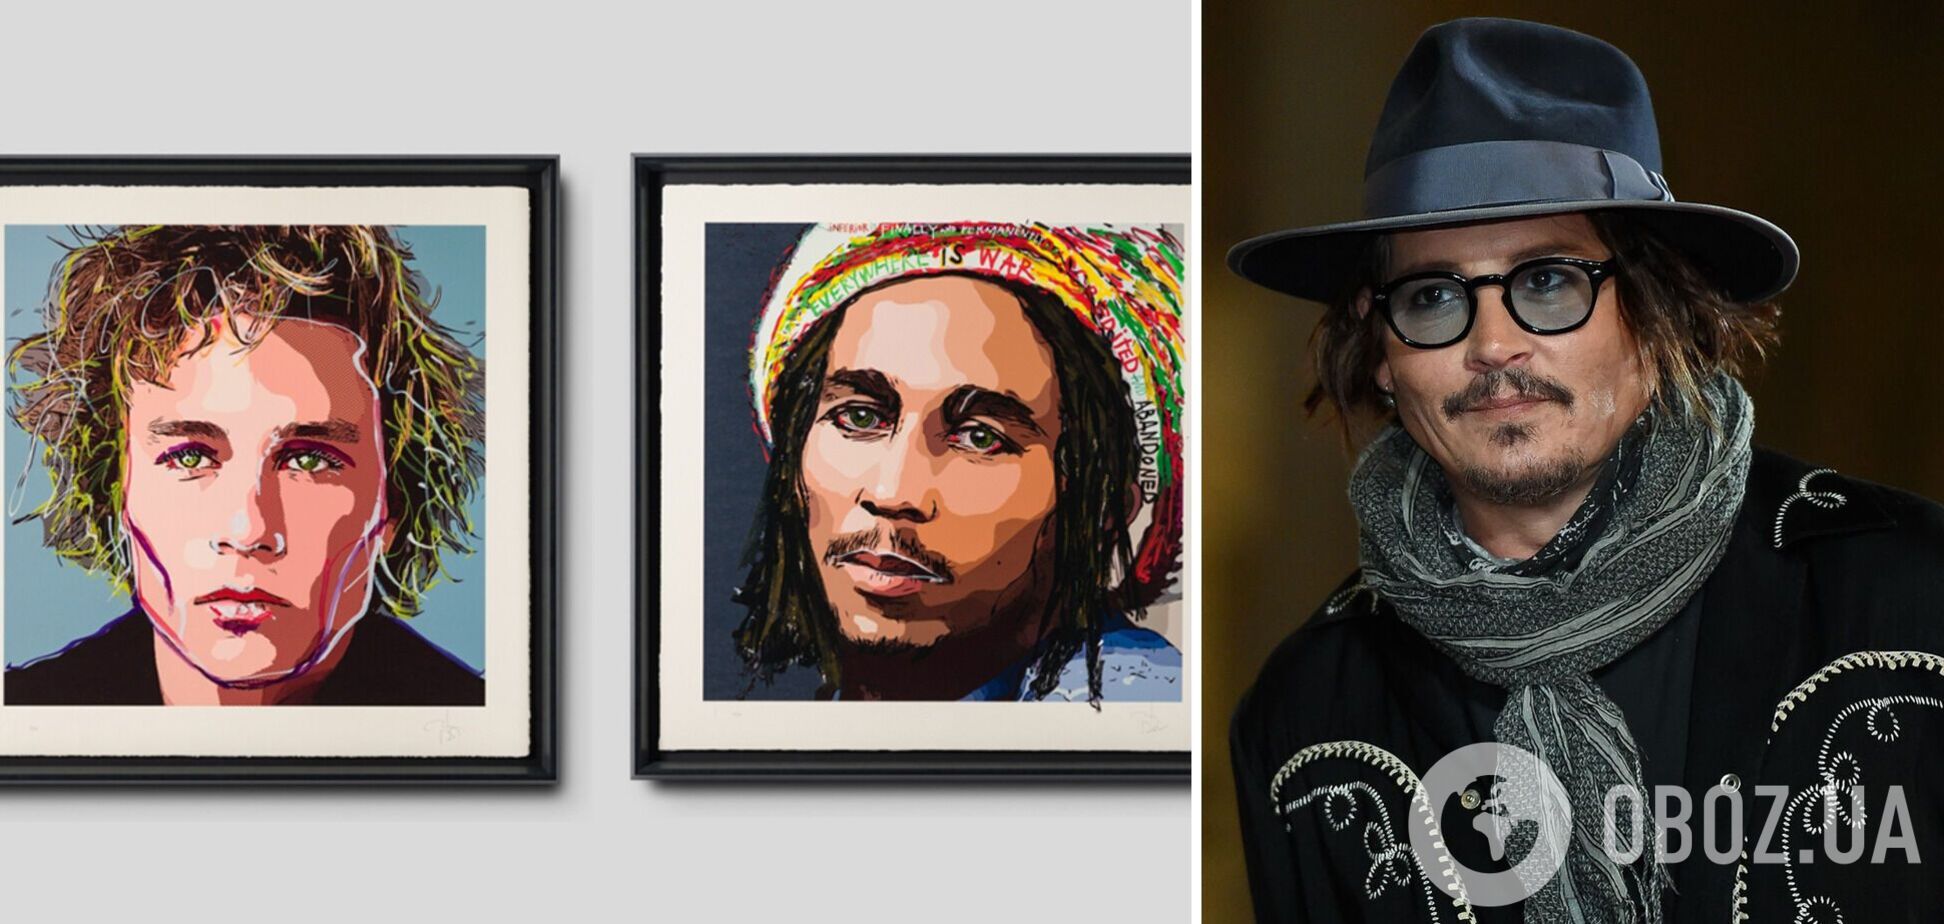 Джонни Депп начал продавать собственные картины: за портреты Боба Марли, Хита Леджера и других актер заработал $5,4 млн